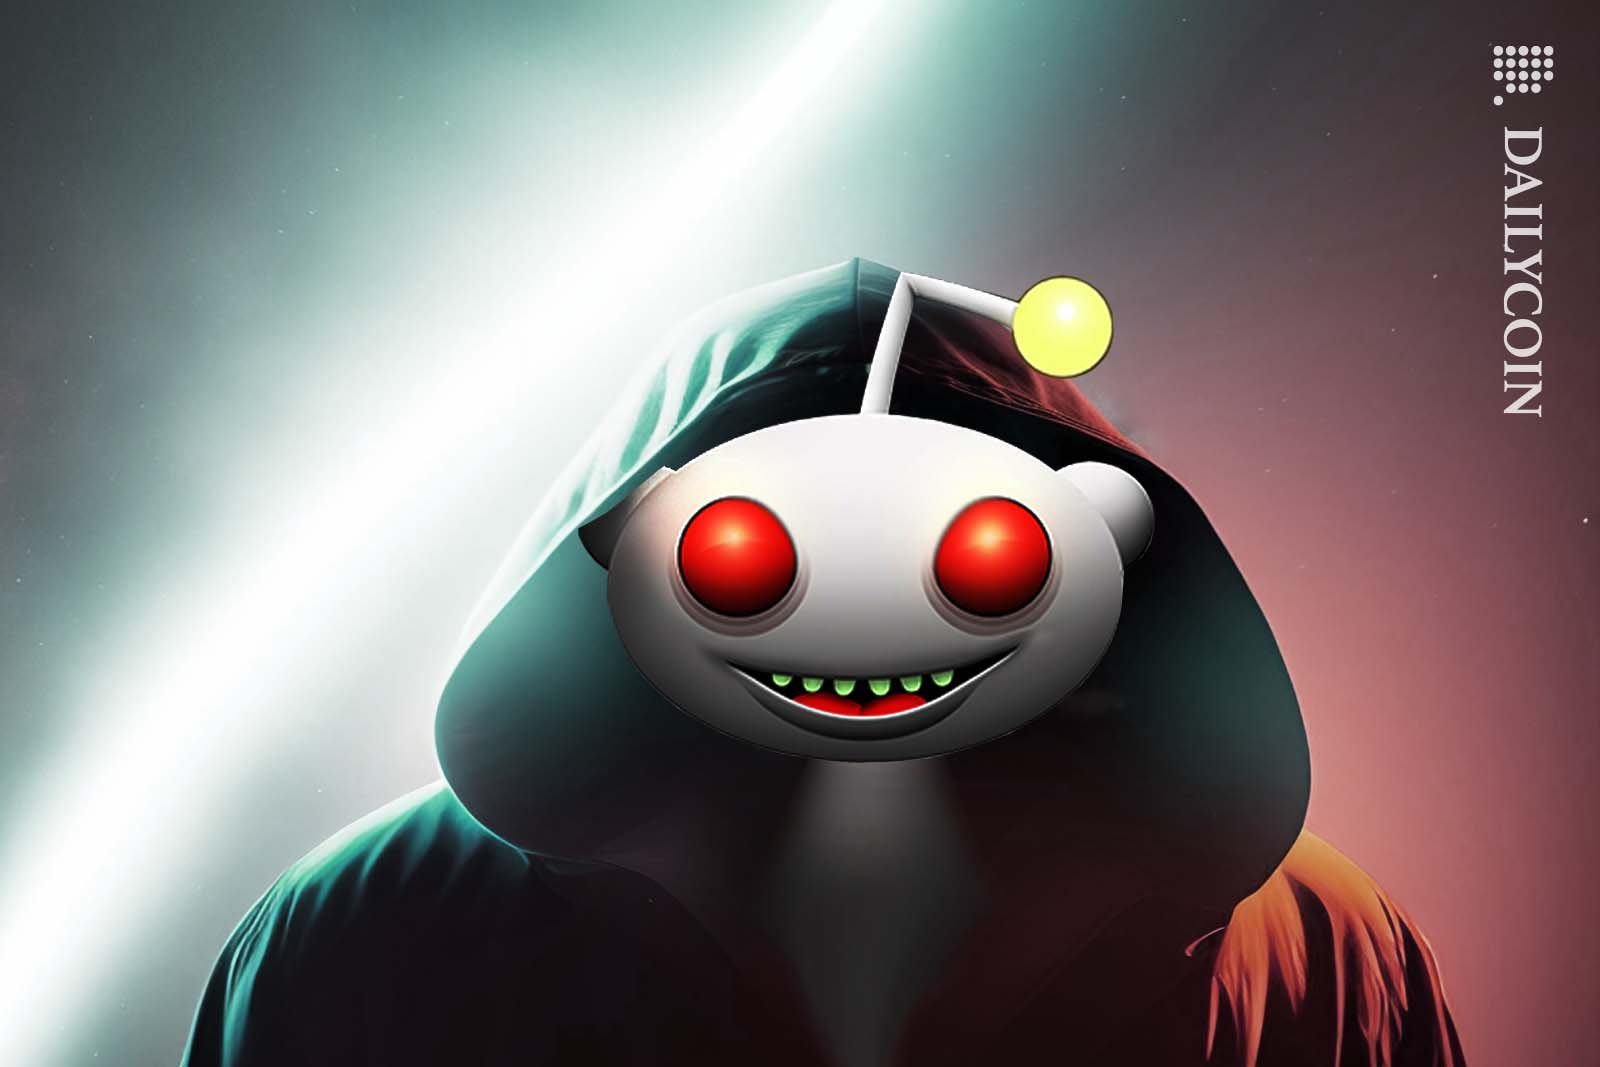 An evil looking Reddit mascot wearing a dark hoodie.